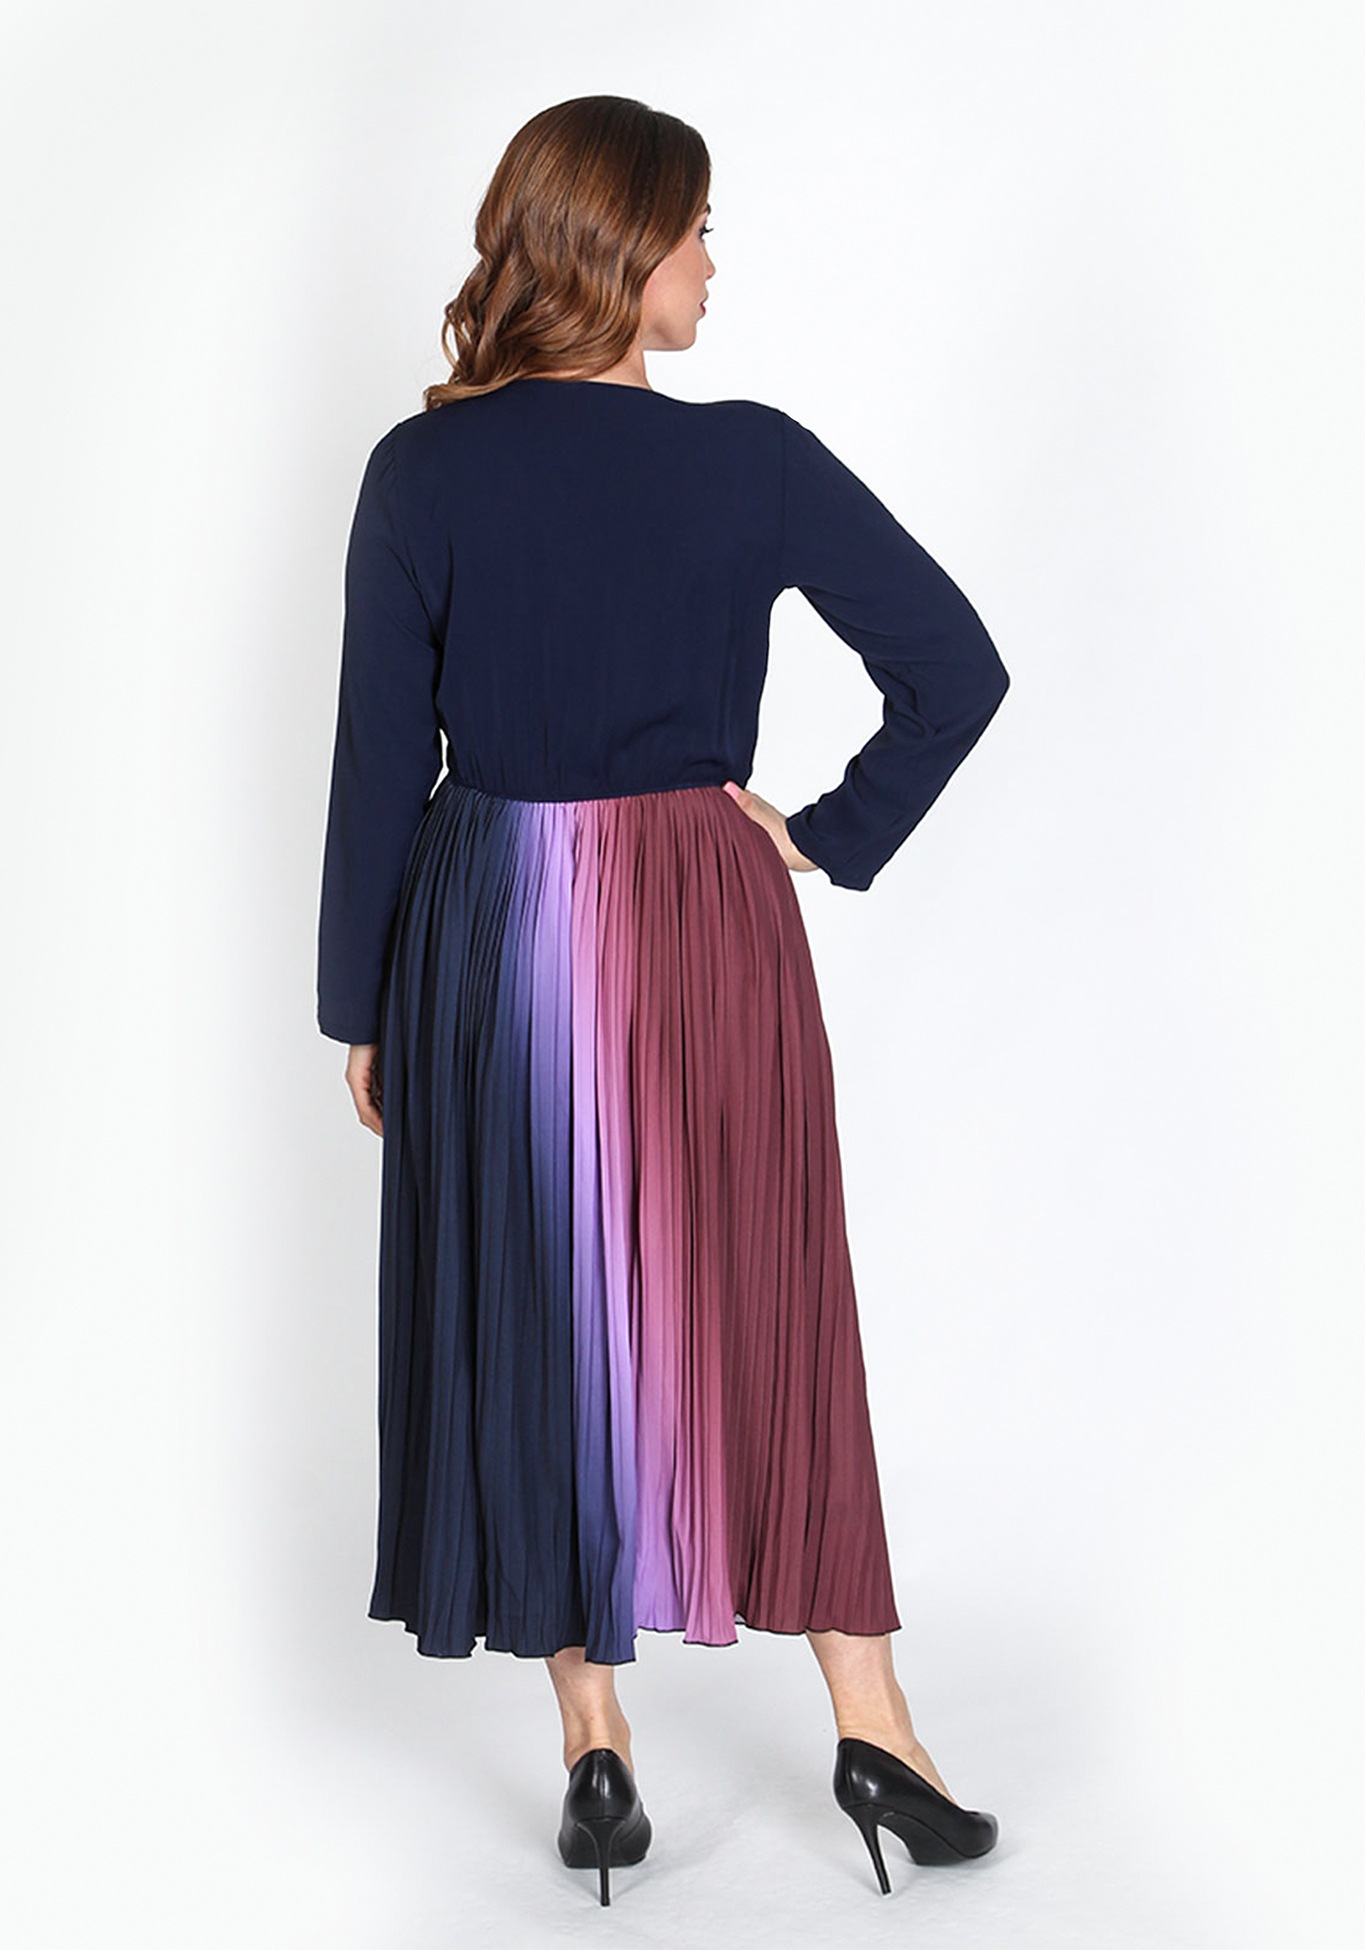 Платье плиссированное «Зафира», размер 48, цвет сине-фиолетовый - фото 3